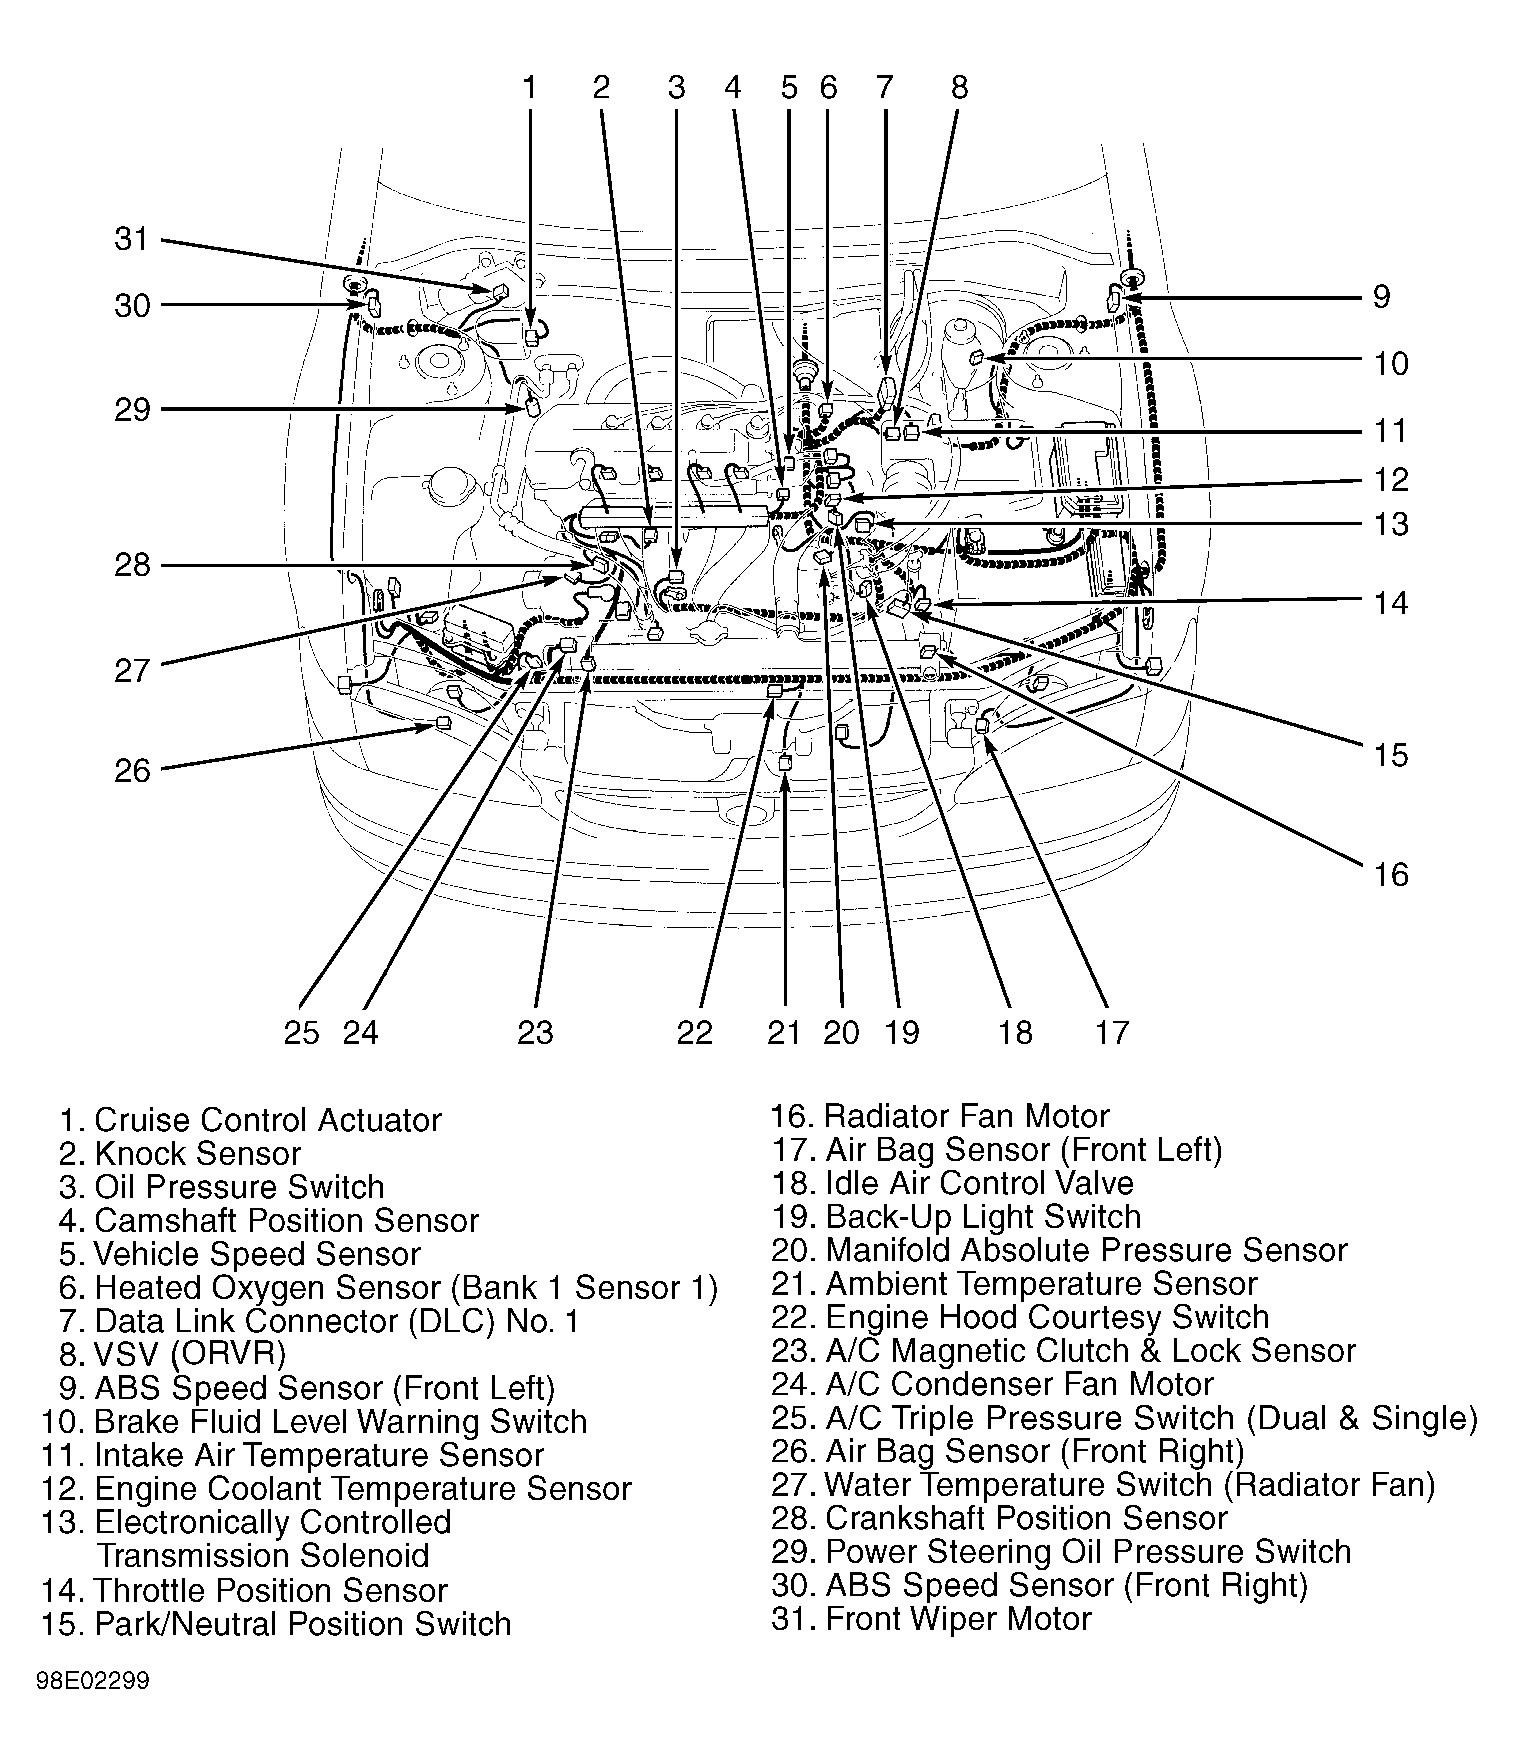 1996 toyota Camry Engine Diagram toyota Supra Engine Diagram toyota Wiring Diagrams Instructions Of 1996 toyota Camry Engine Diagram